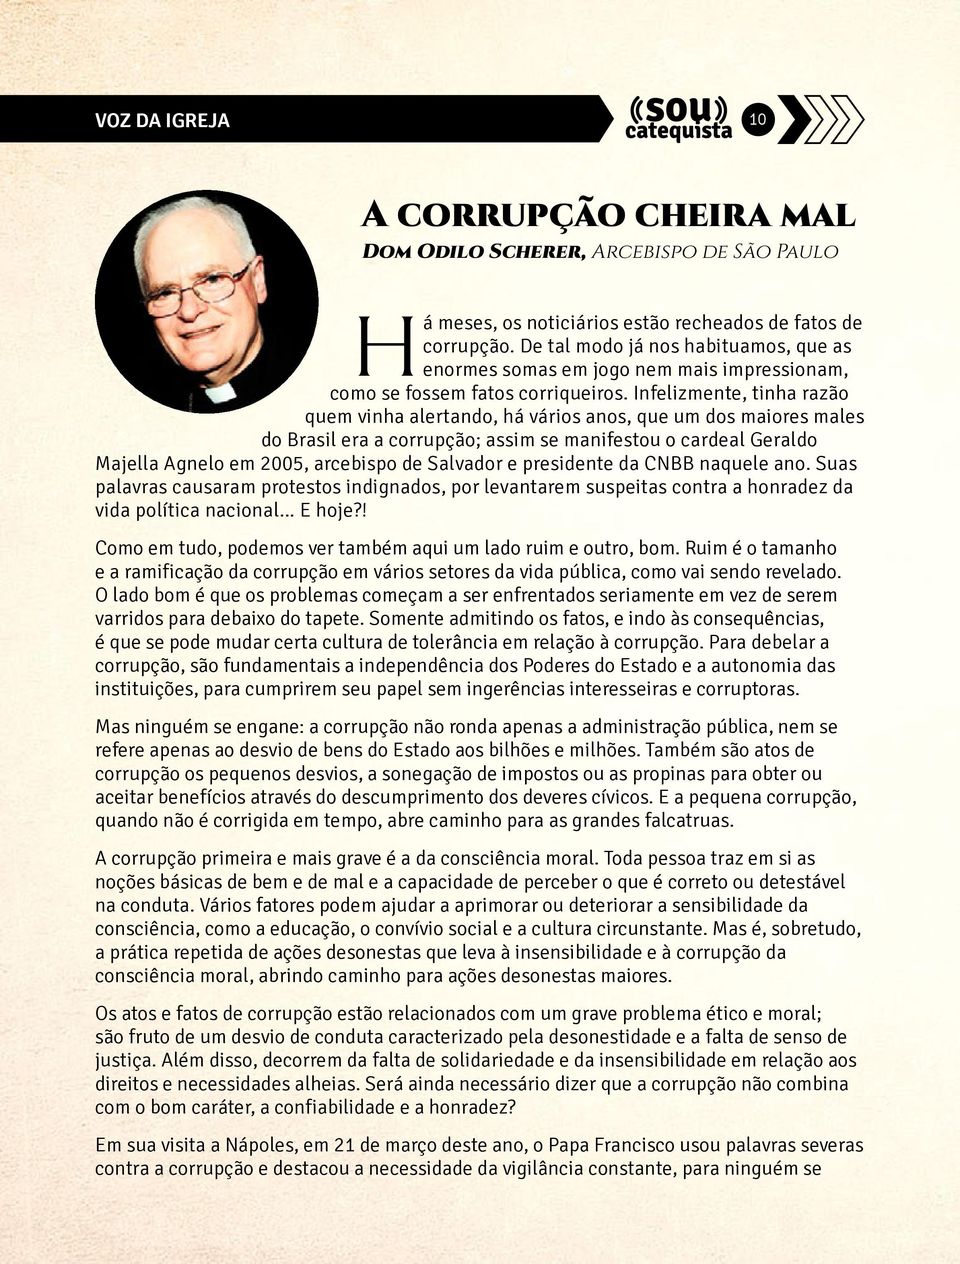 Infelizmente, tinha razão quem vinha alertando, há vários anos, que um dos maiores males do Brasil era a corrupção; assim se manifestou o cardeal Geraldo Majella Agnelo em 2005, arcebispo de Salvador